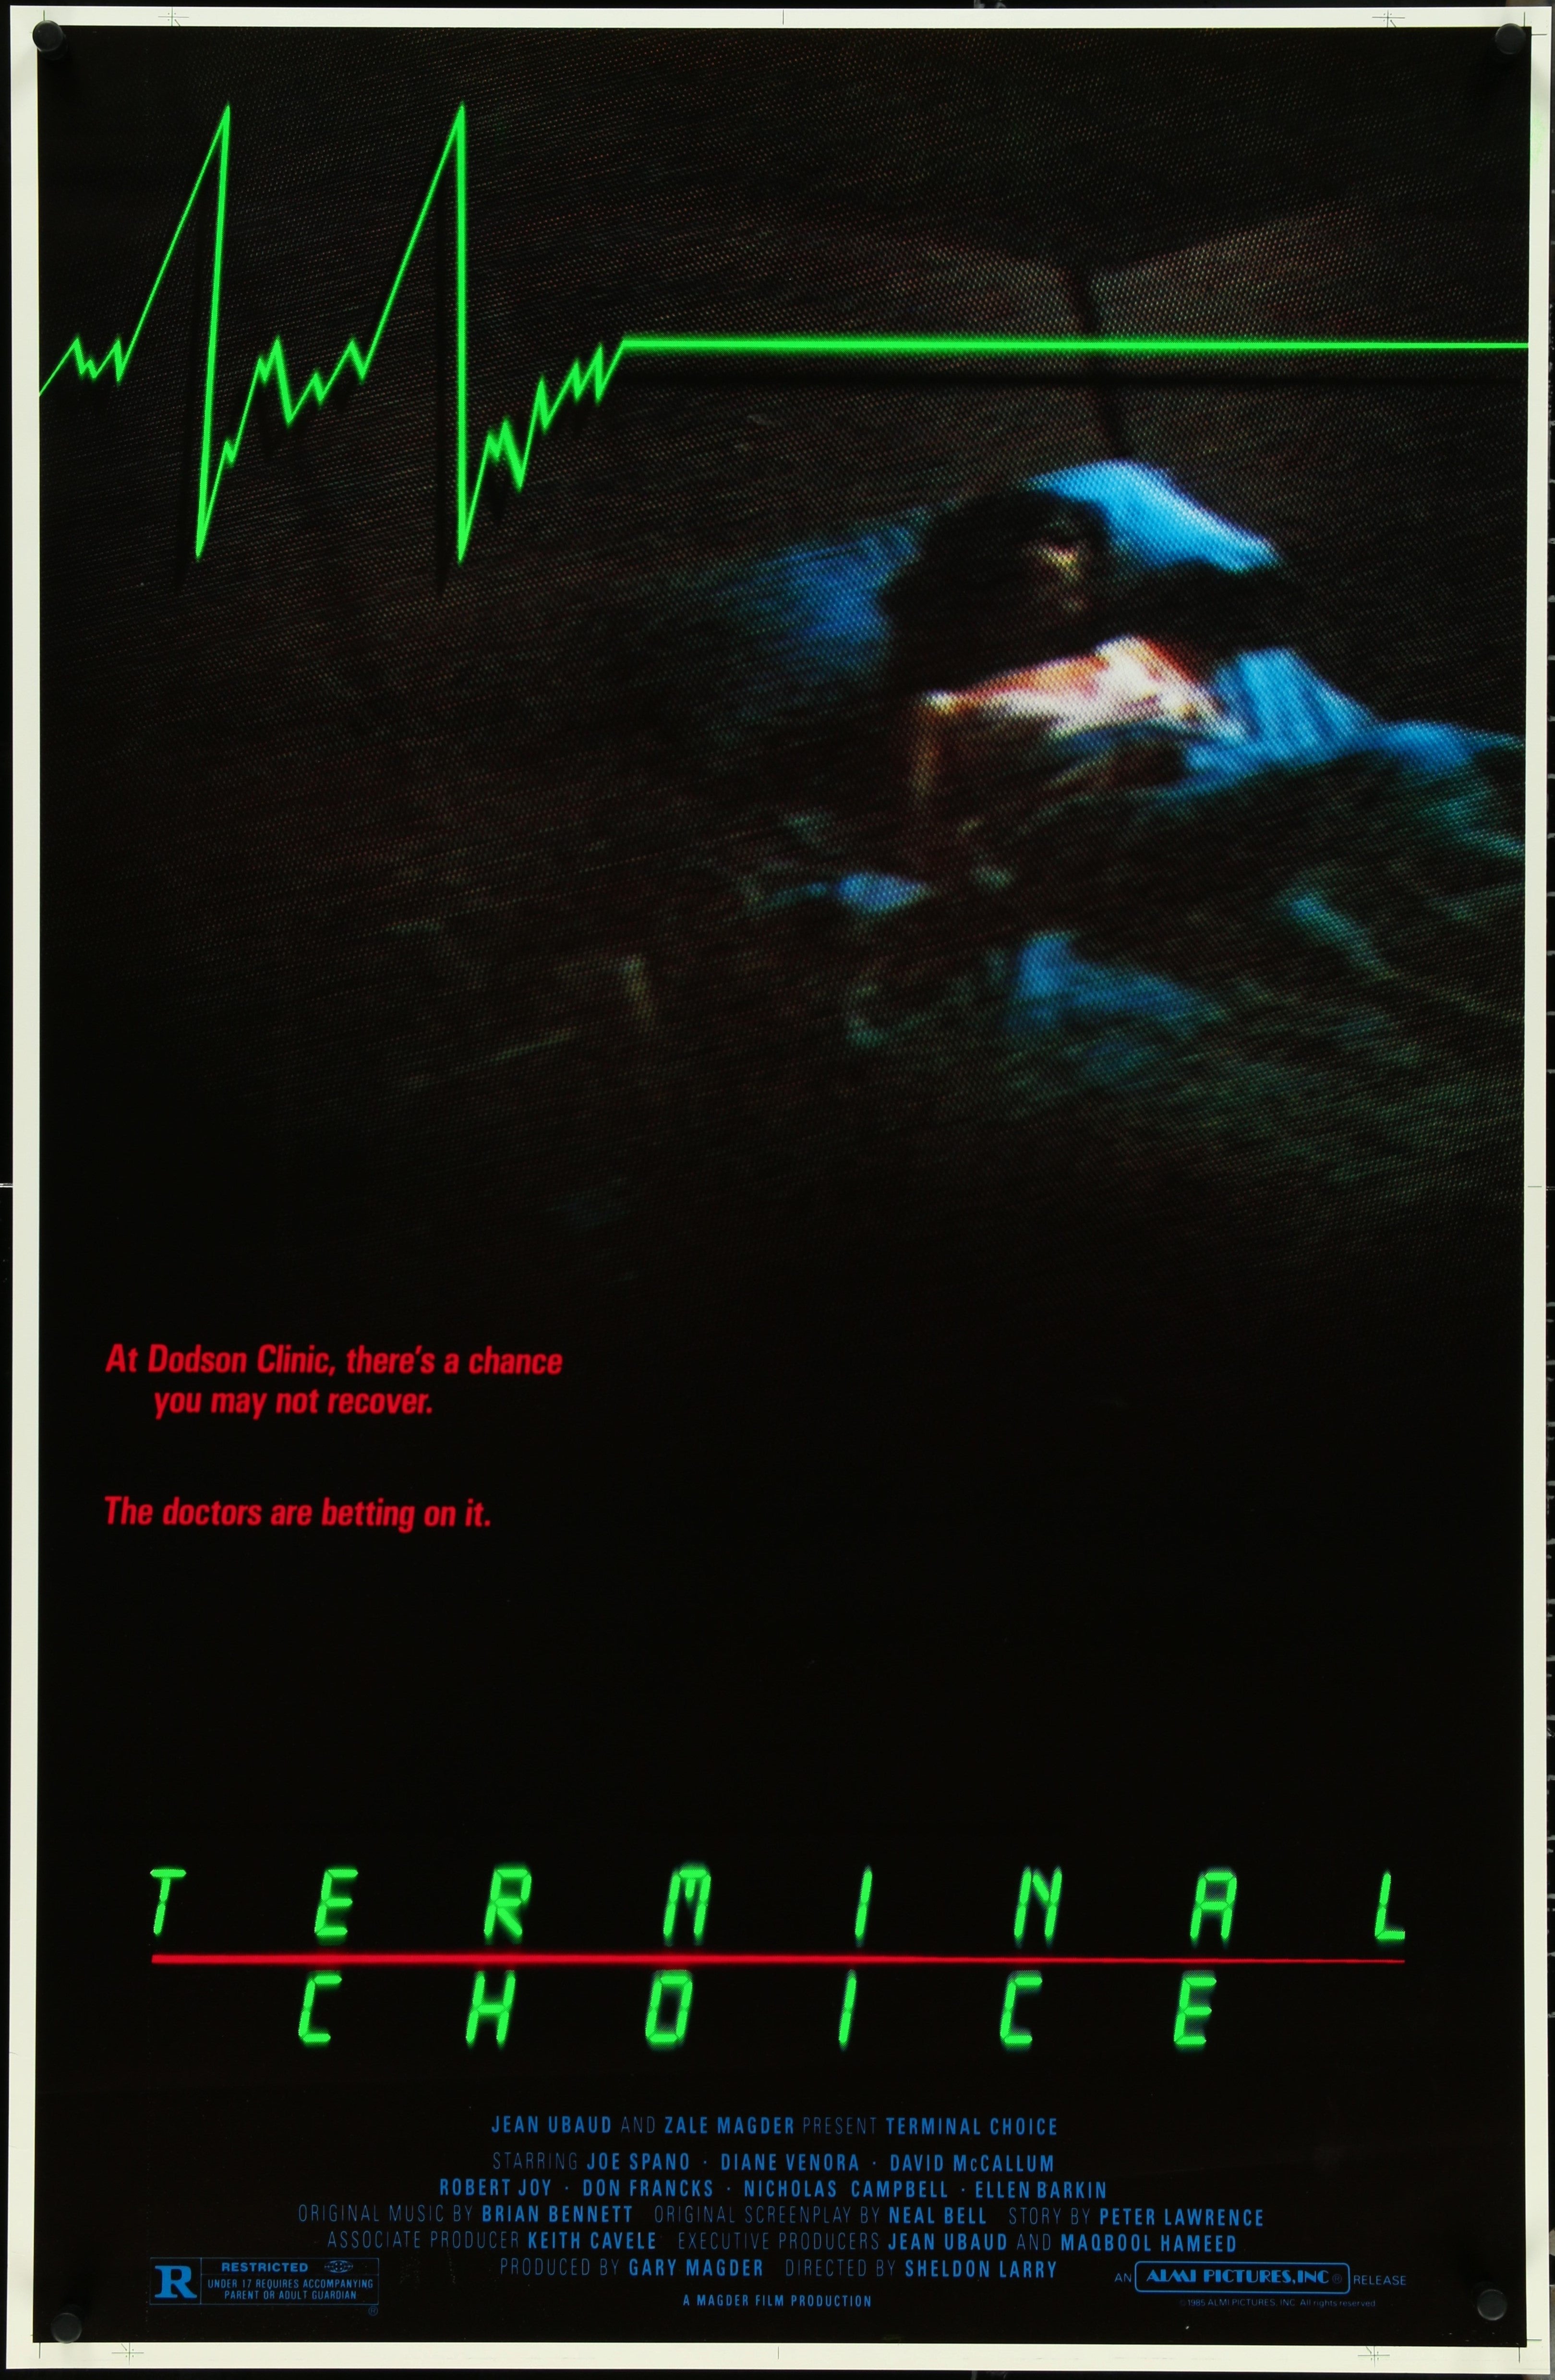 TERMINAL CHOICE (1985)